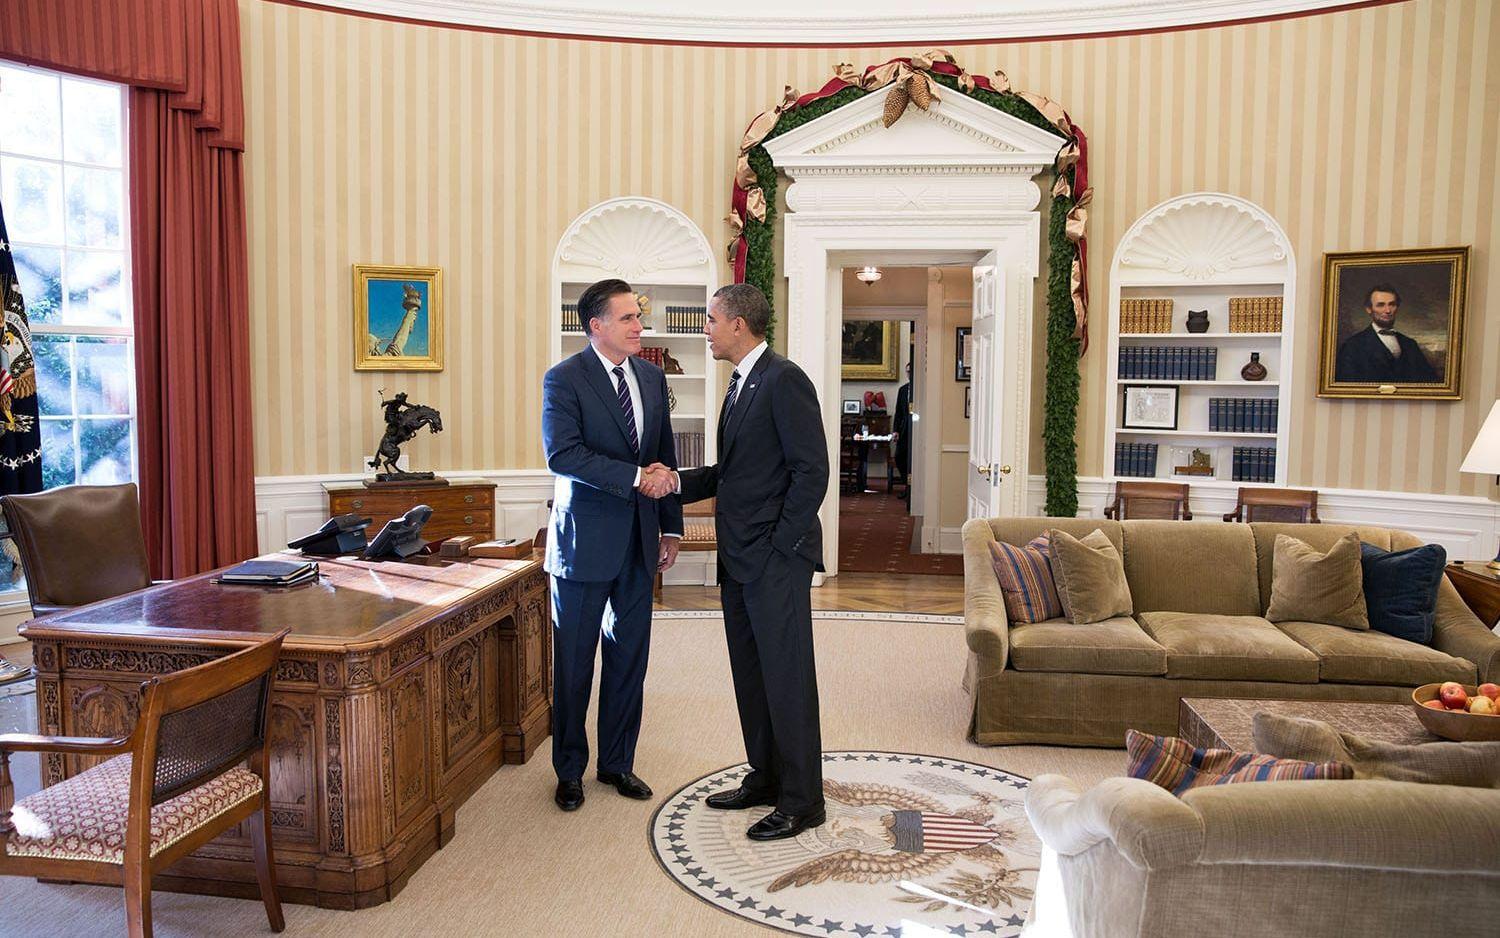 29 november, 2012: Barack Obama och Mitt Romney, som just förlorat presidentvalet, möts över en lunch i Vita Huset. Foto: Pete Souza / Vita Huset